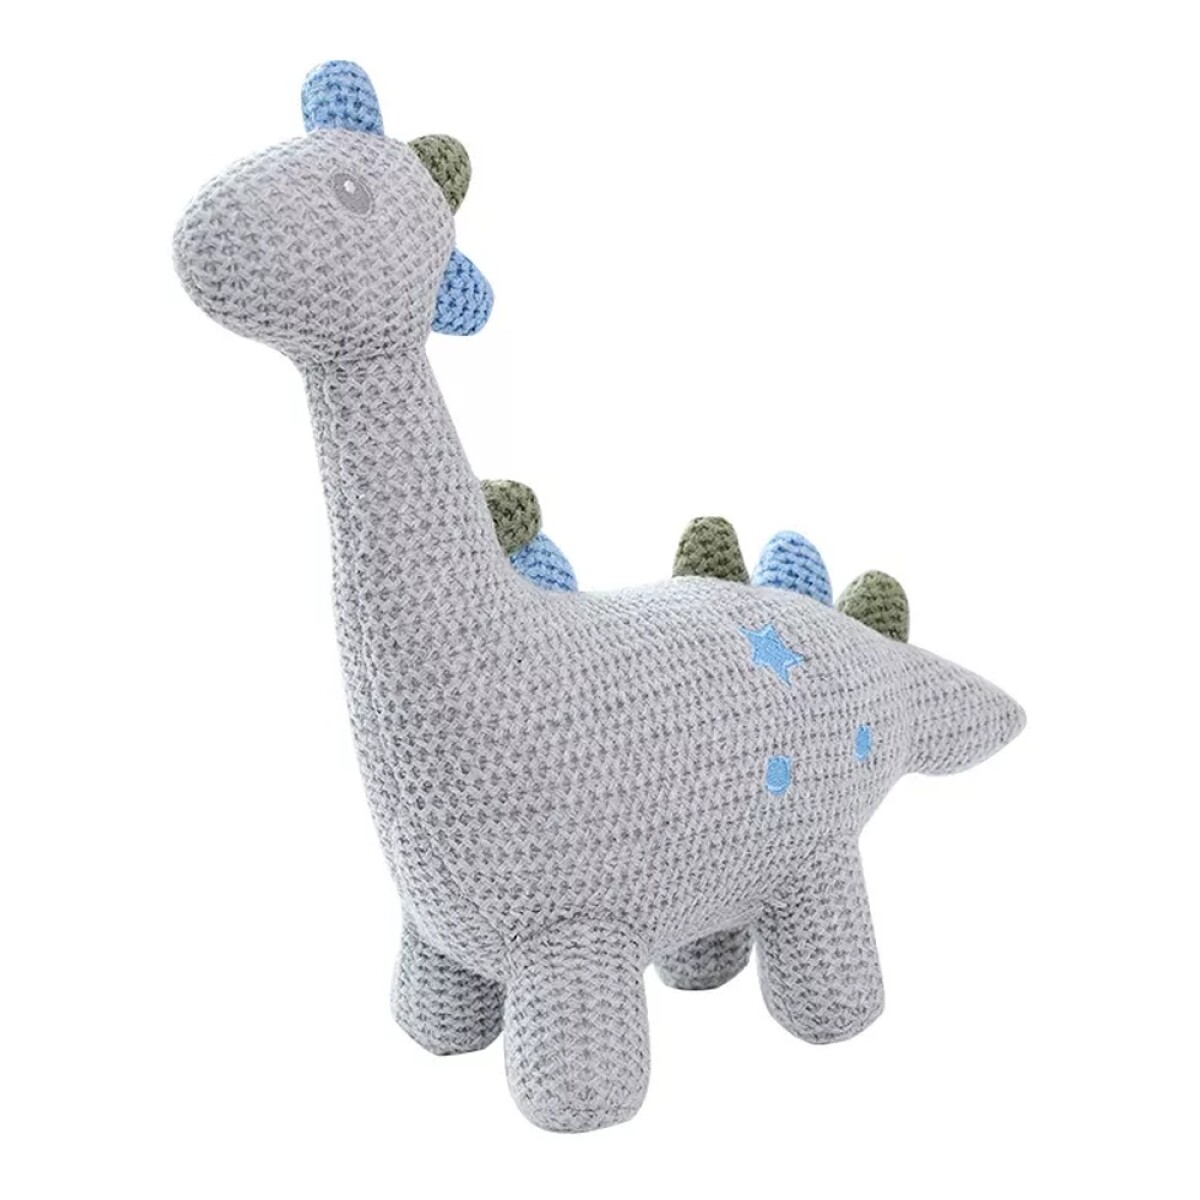 Peluches de Animales Tejidos Crochet c/ Cascabel Bebés Niños - Dinosaurio 